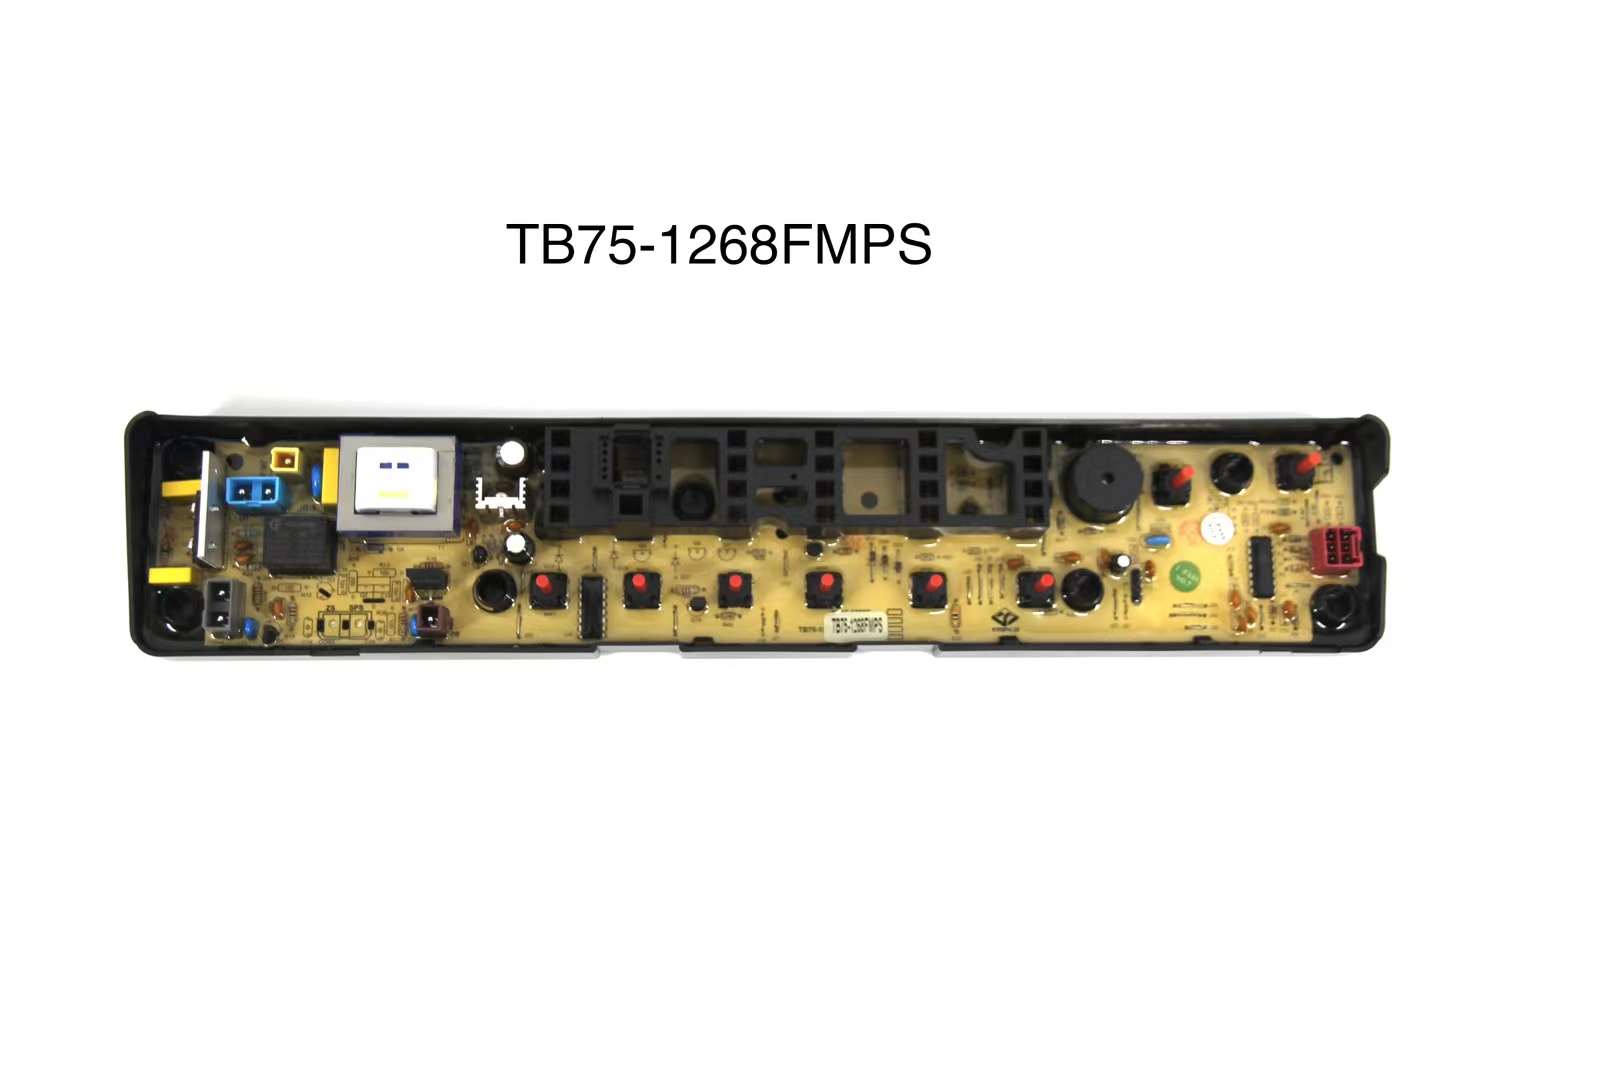 TB75-1268FMPS